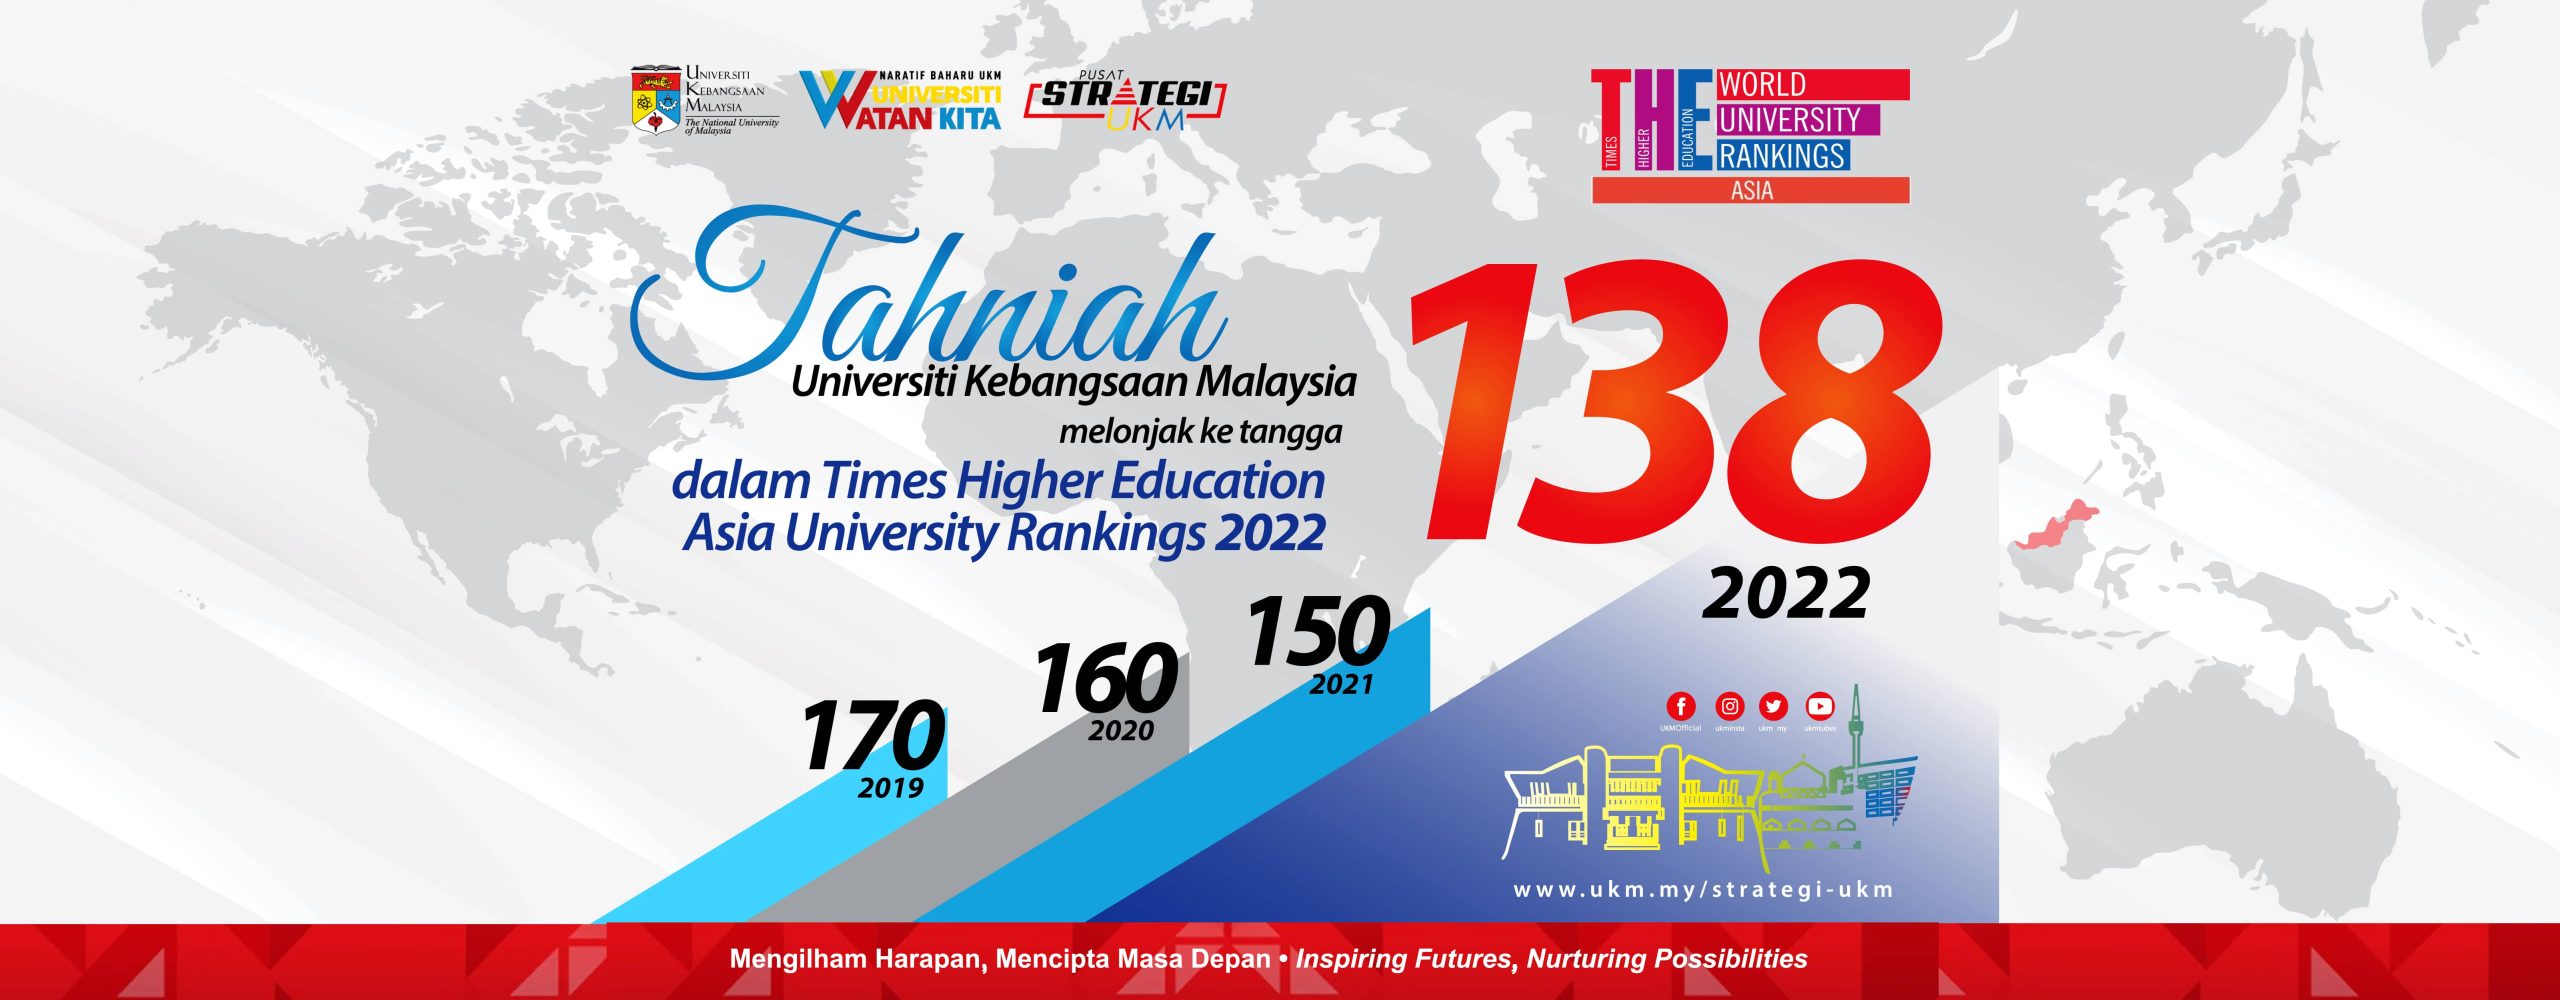 Tahniah Universiti Kebangsaan Malaysia melonjak ke tangga 138